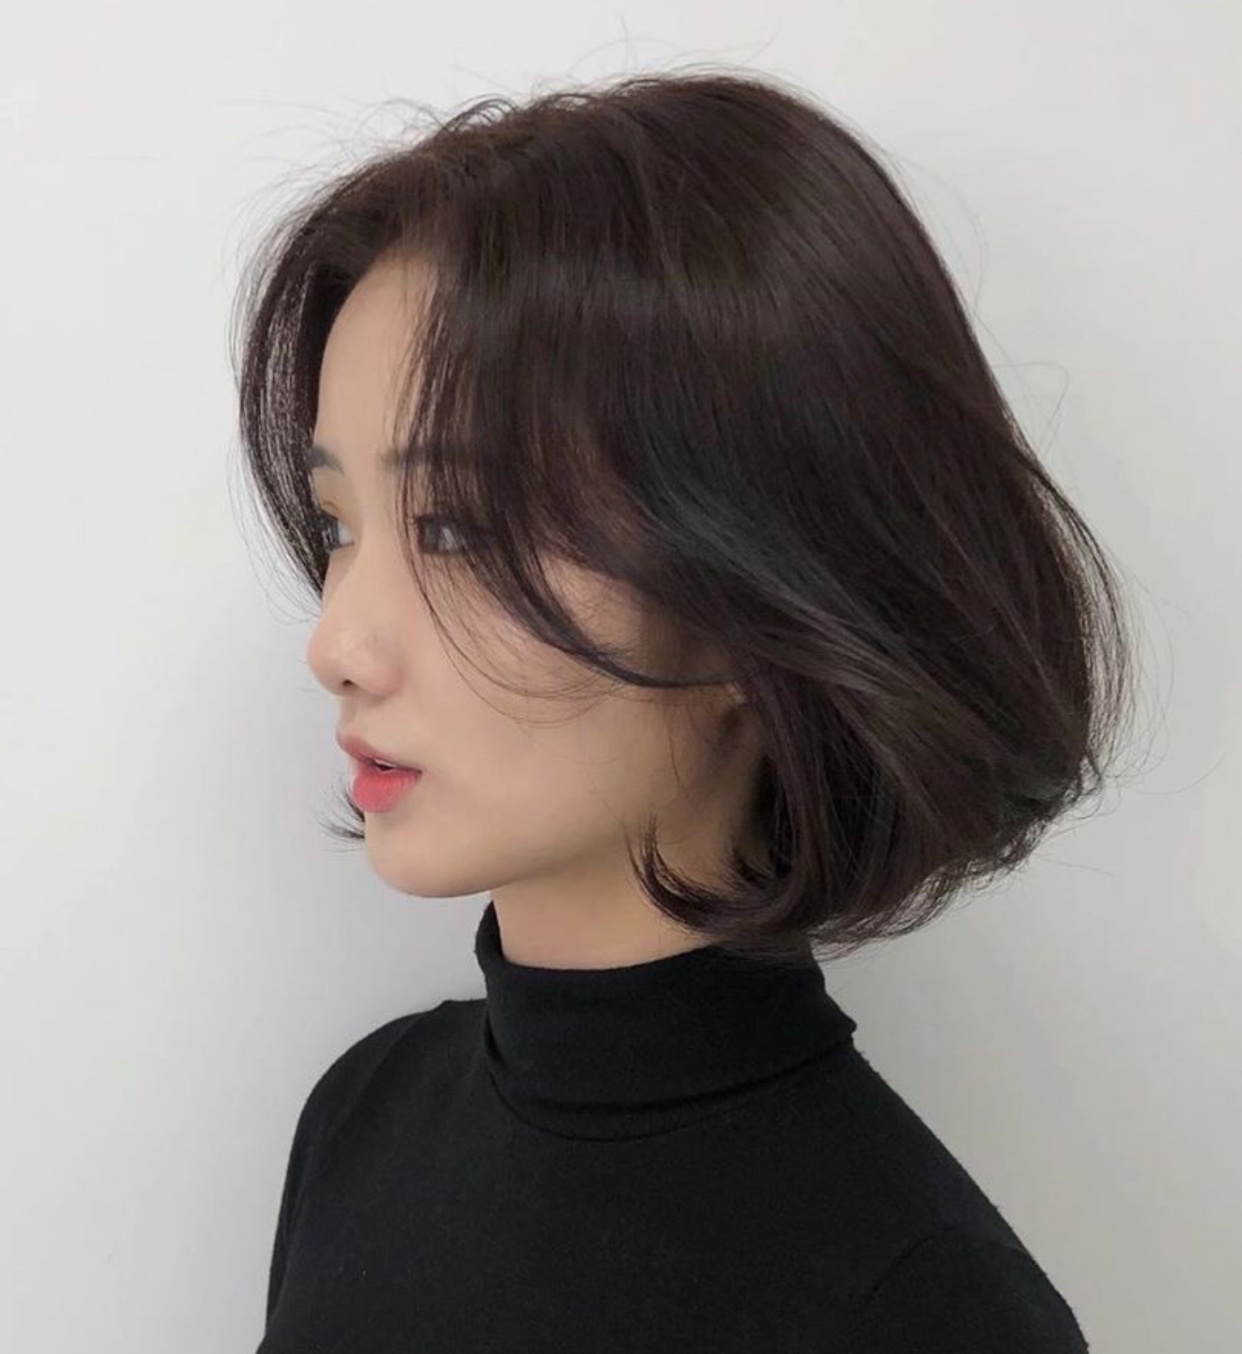 2019年最流行的五款发型,韩式短发像初恋,偏分波浪优雅知性!